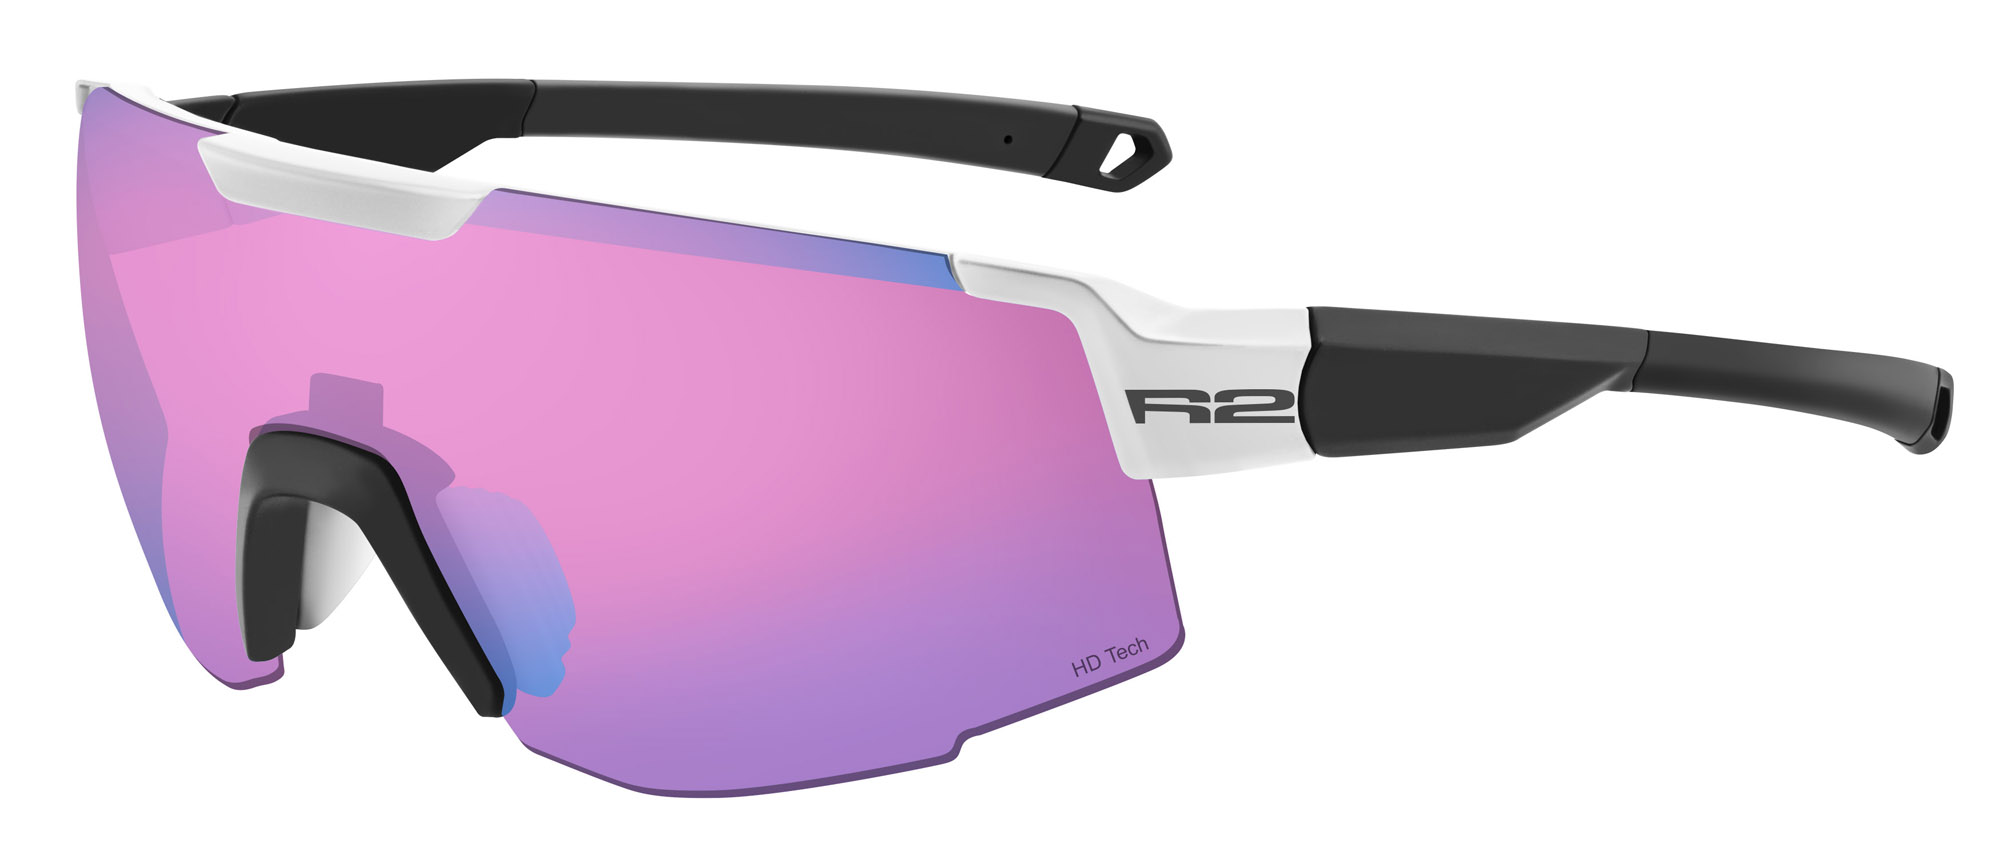 HD sport sunglasses R2 EDGE AT101B standard